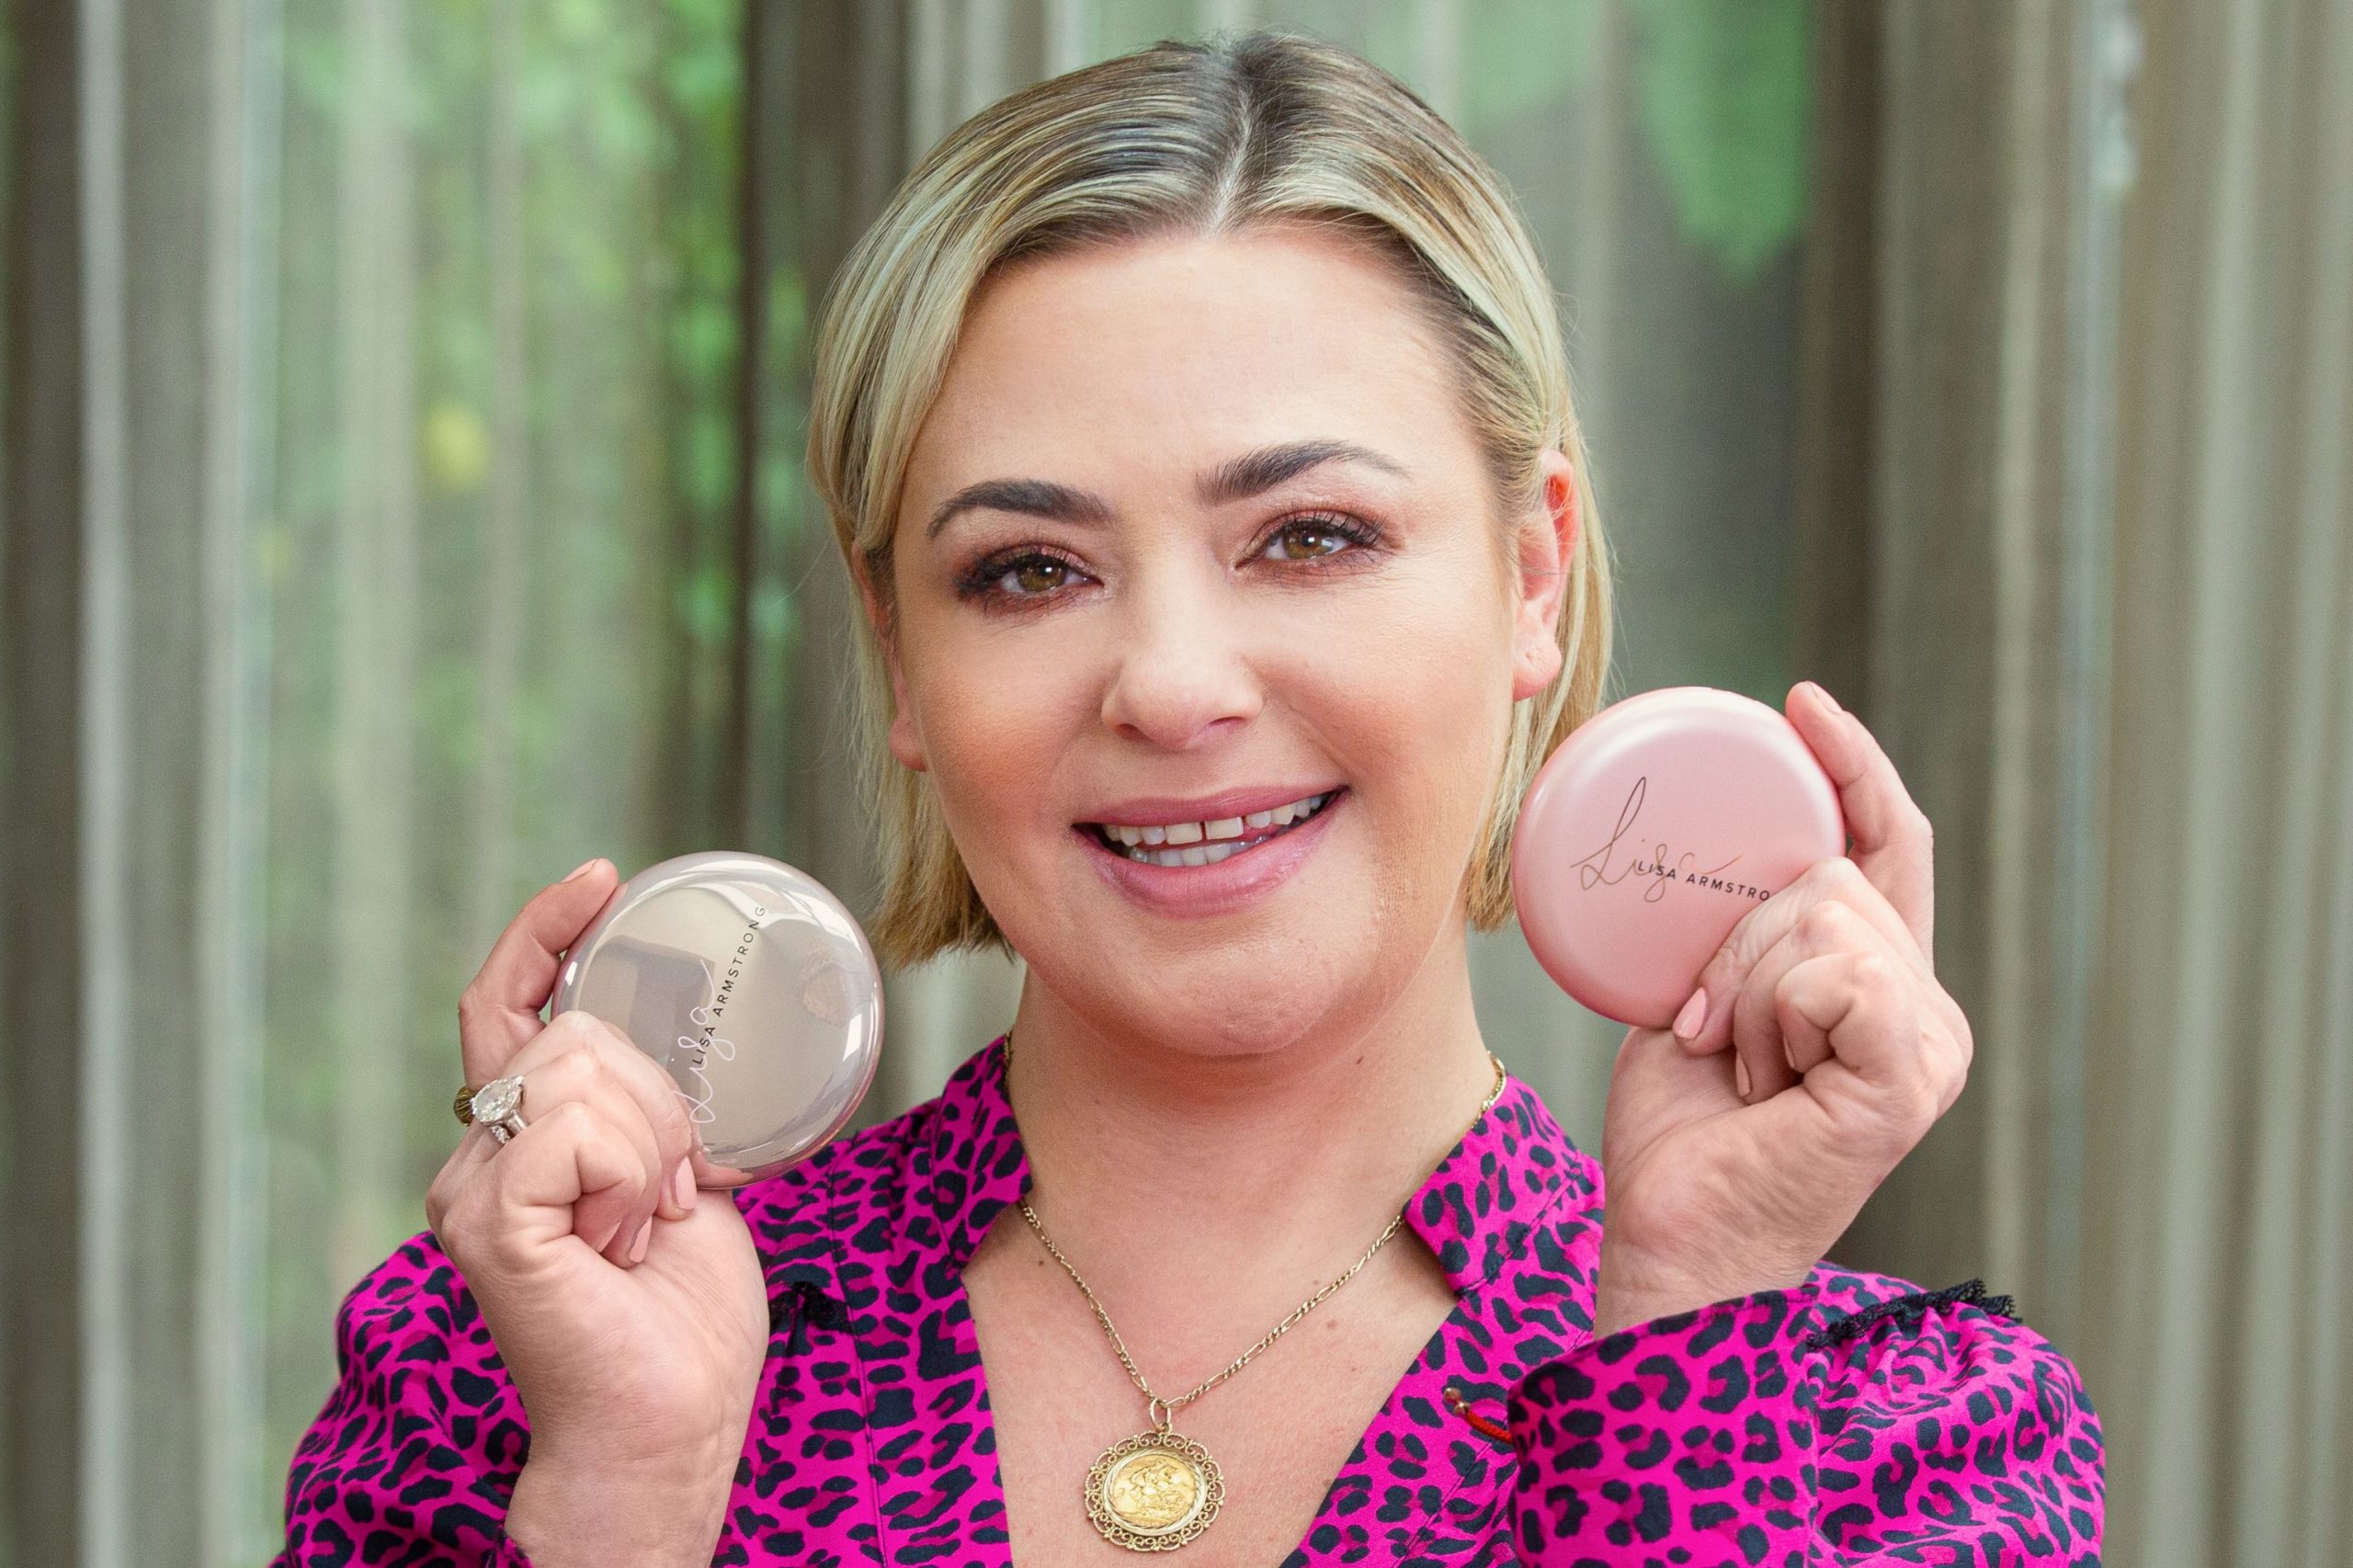 Makeup Expert Lisa Armstrong